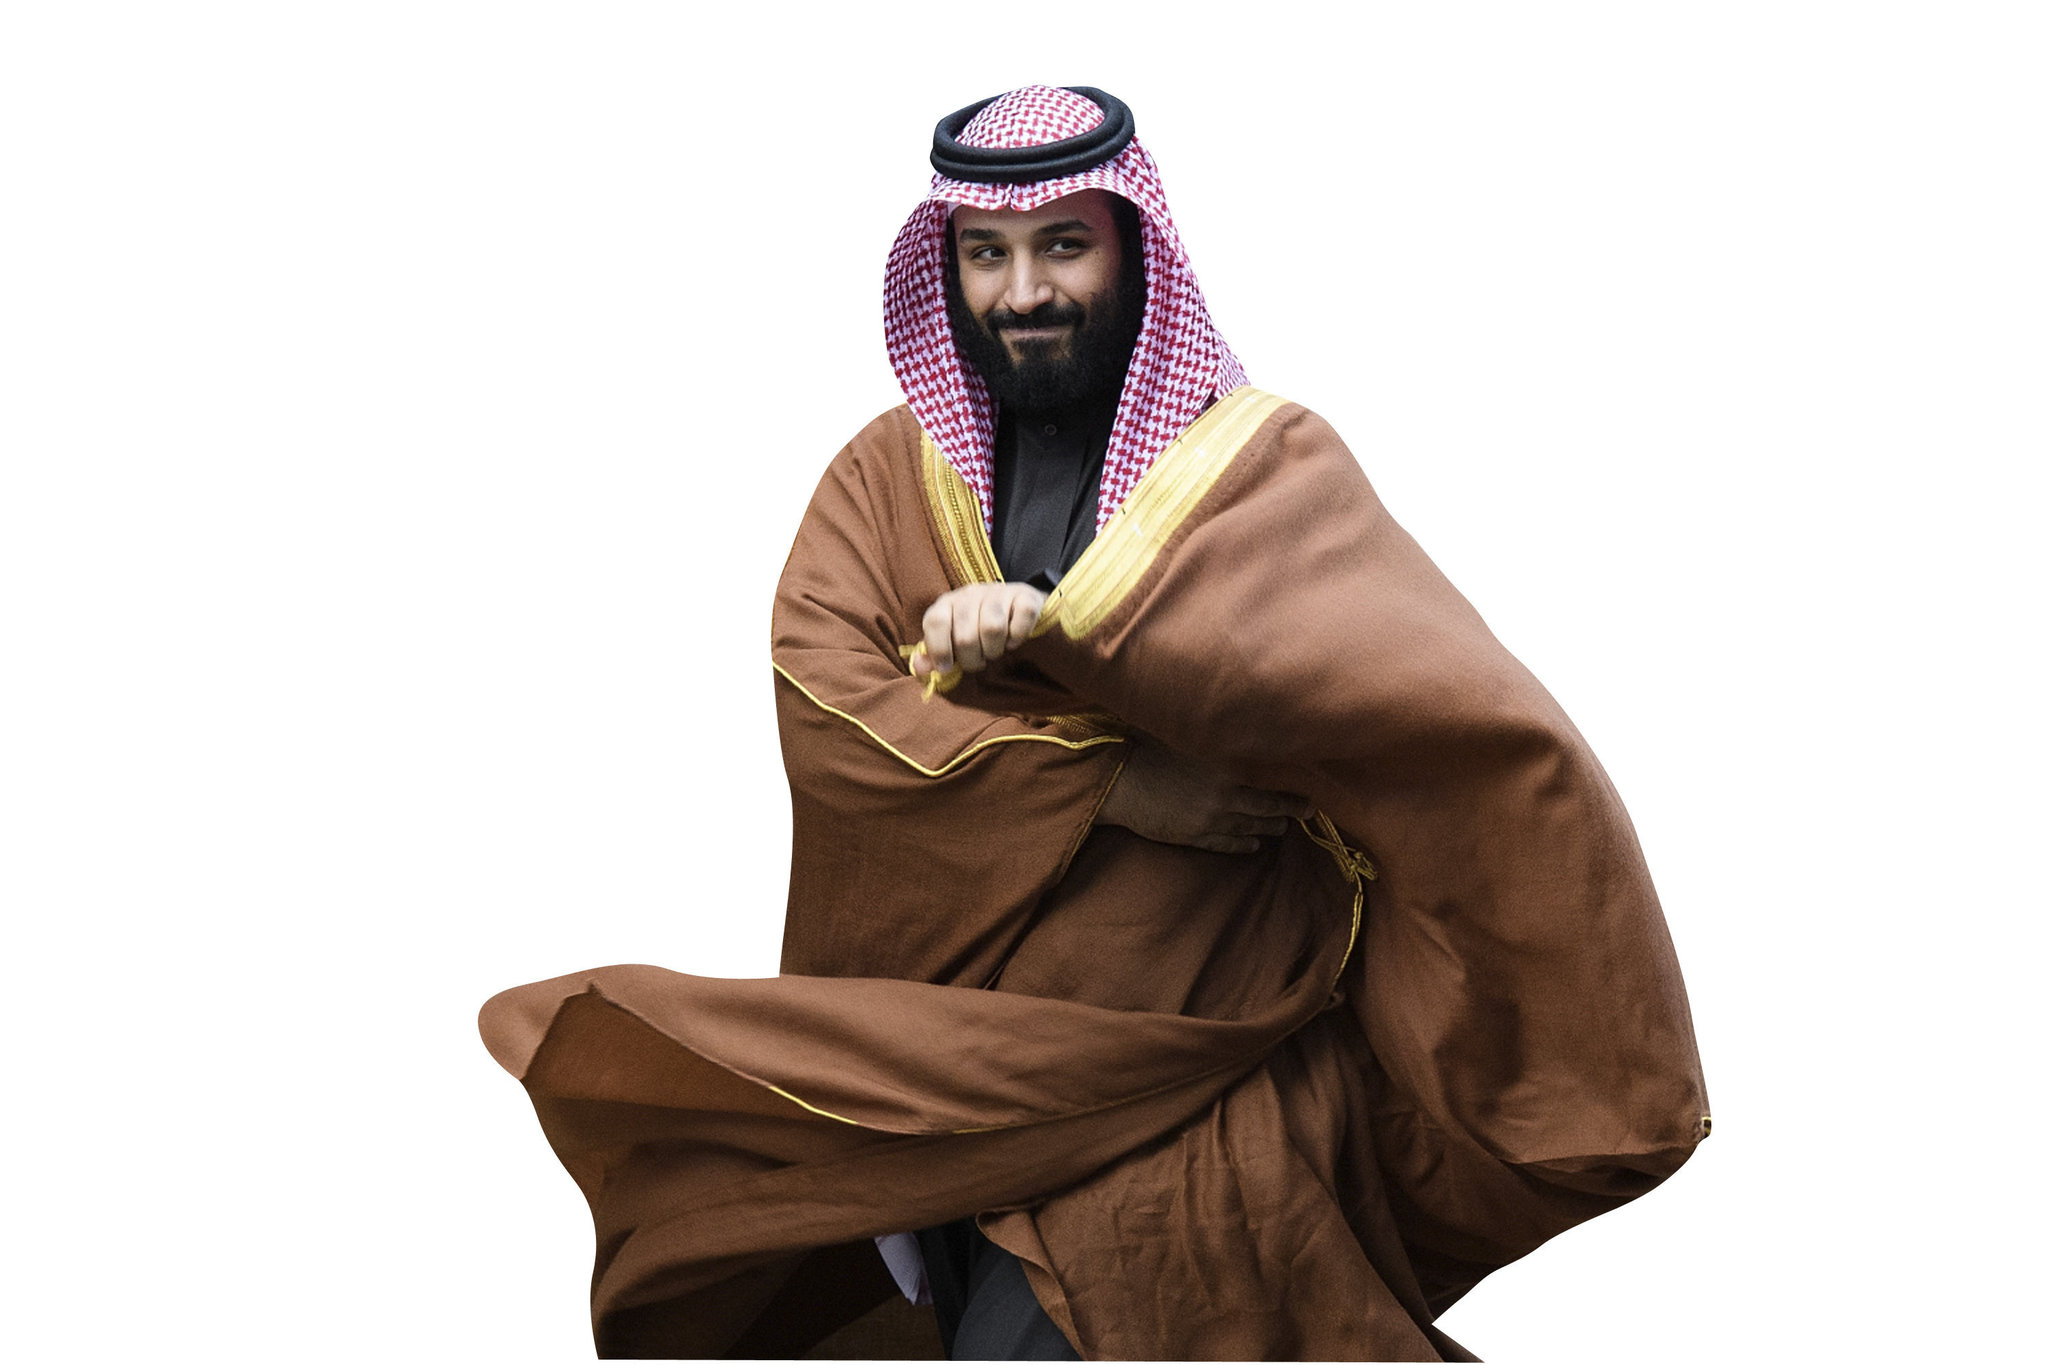 Suudi Arabistan Veliaht Prensi Muhammed bin Selman, dünyaca ünlü futbol kulübünün peşinde